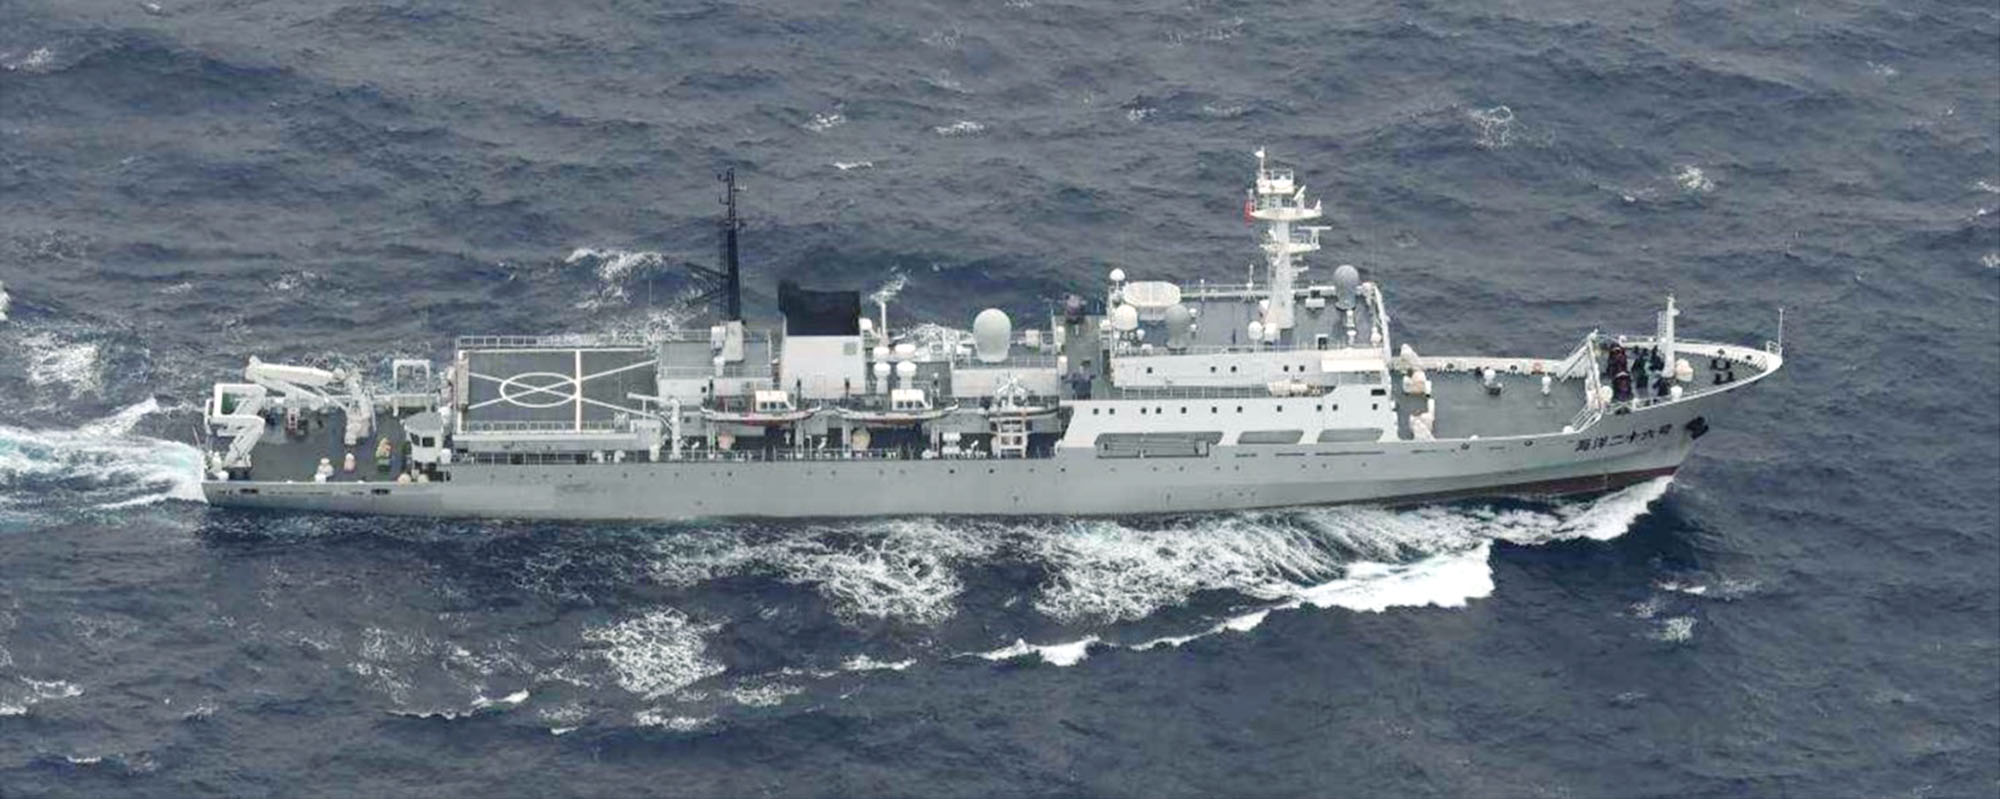 للمرة العاشرة.. سفينة تابعة للبحرية الصينية تدخل المياه اليابانية